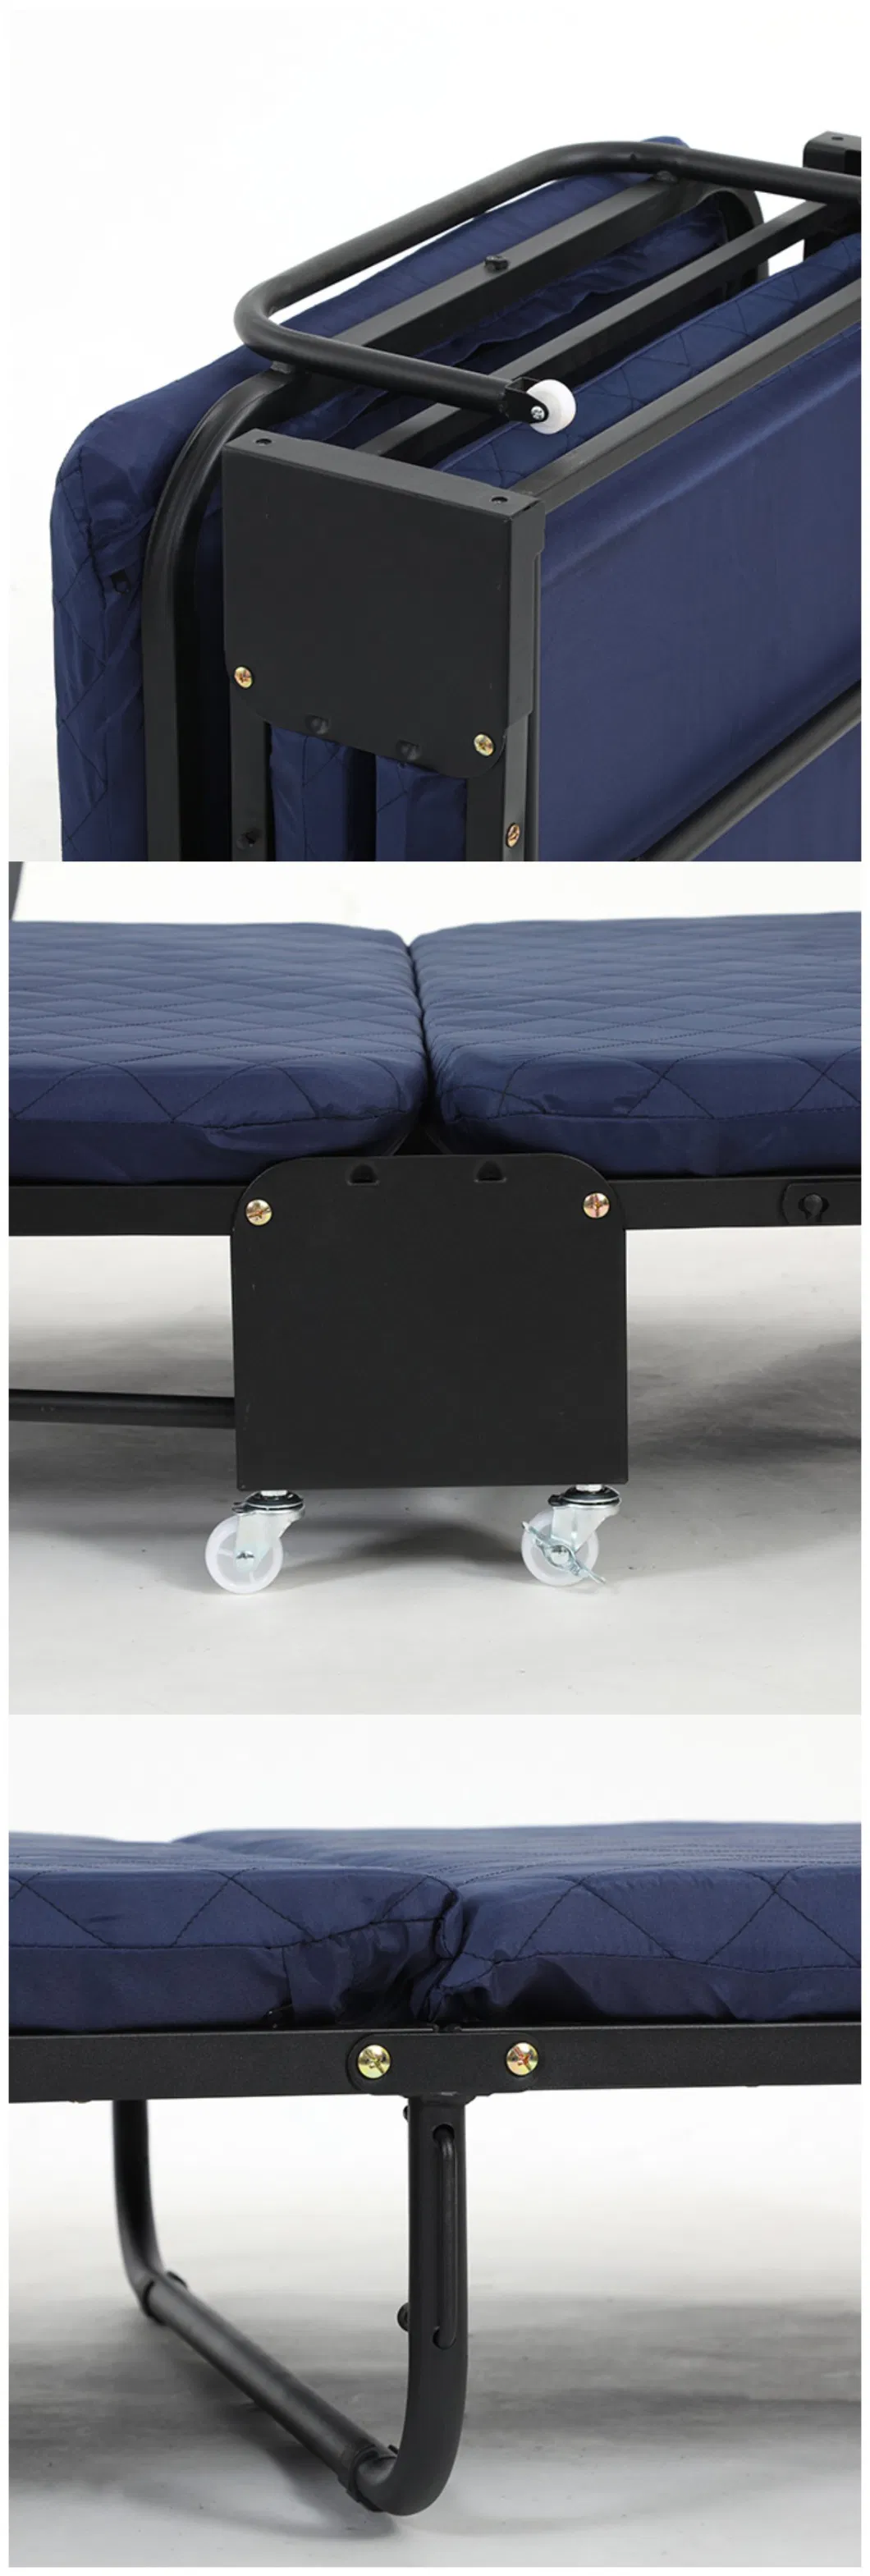 Livingroom Furniture Camp Hospital Metal Folding Extra Bed for Hotel